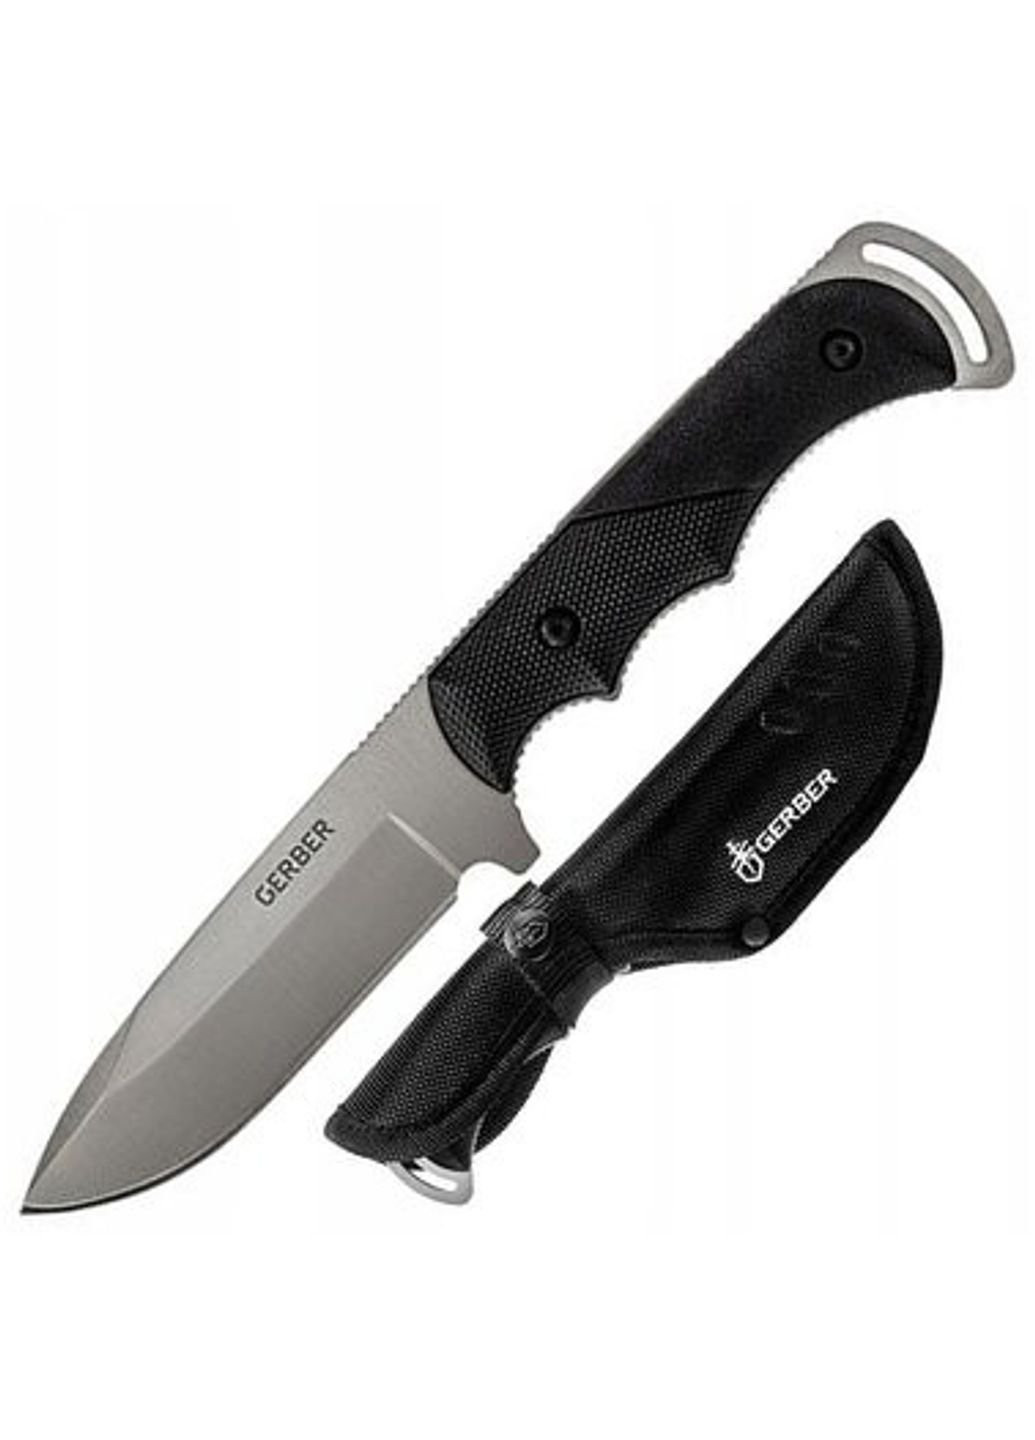 Нож Freeman Guide 1052024 Gerber (253612943)